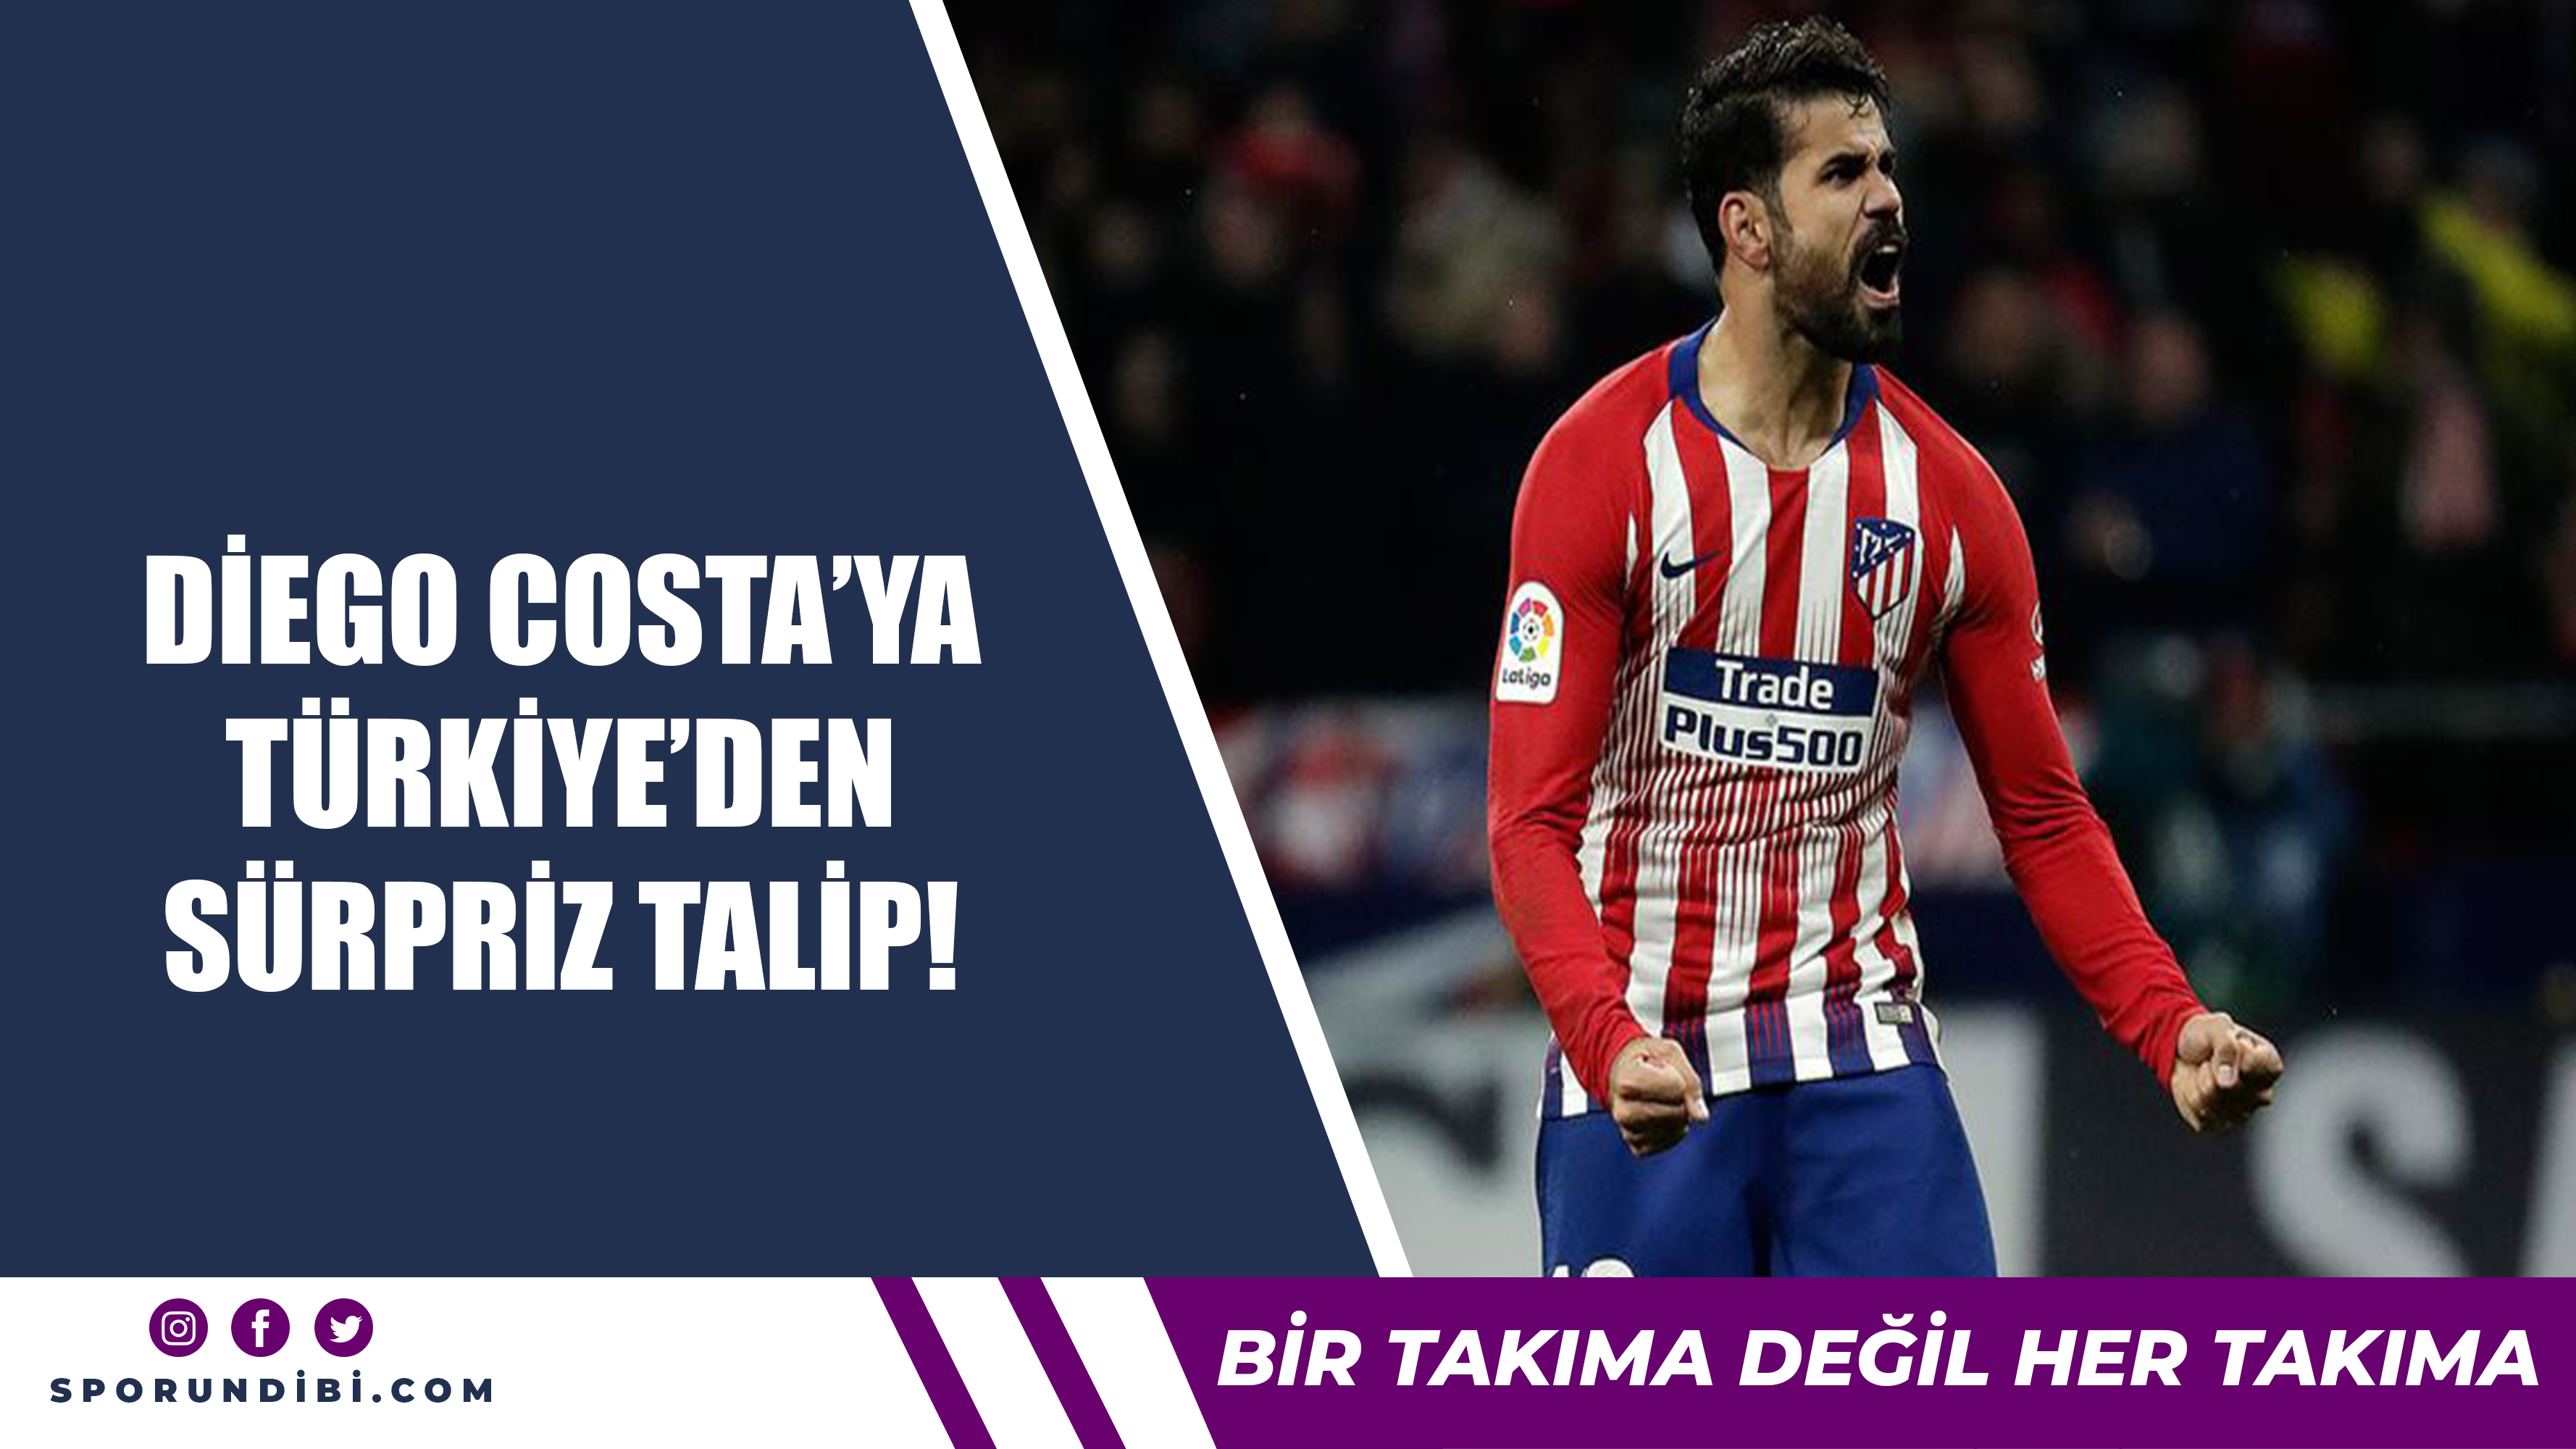 Diego Costa'ya Türkiye'den sürpriz talip!